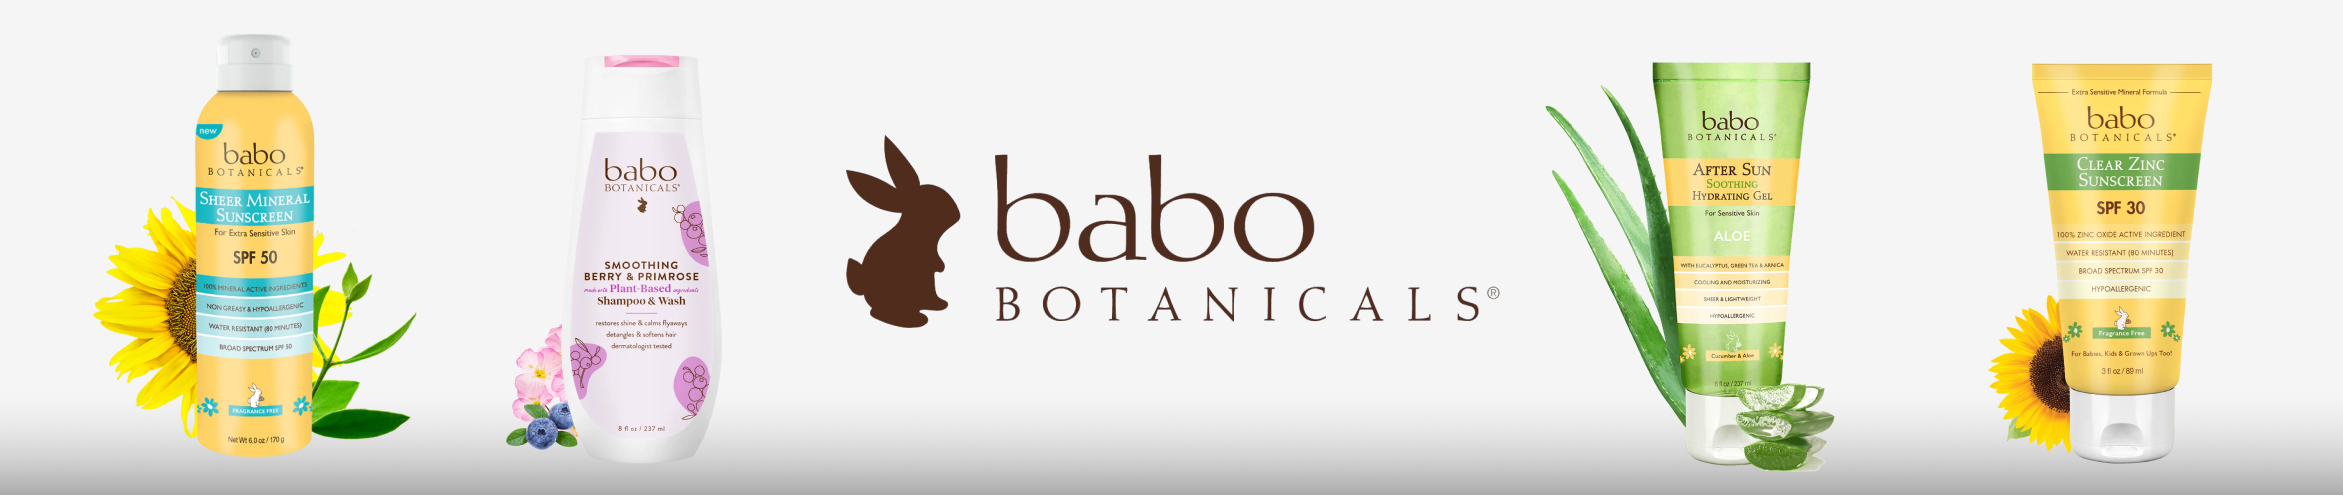 Babo Botanicals - Face Cream